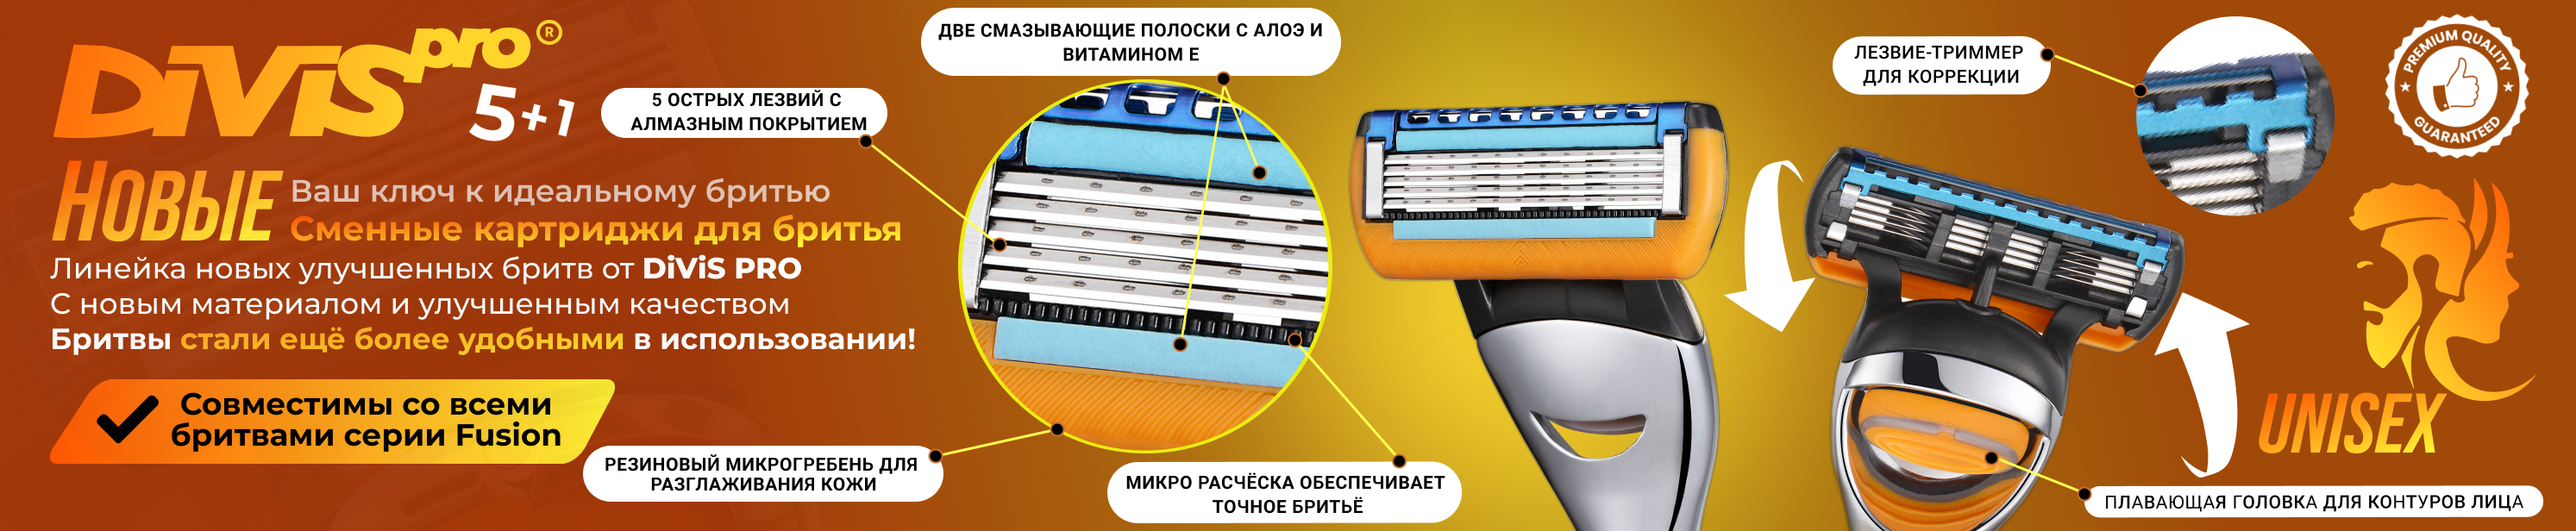 DIVIS PRO - это производитель высококачественных товаров для ухода за собой и личной гигиены - Город Солнечногорск DivisPro5+1-banner-head-2.png